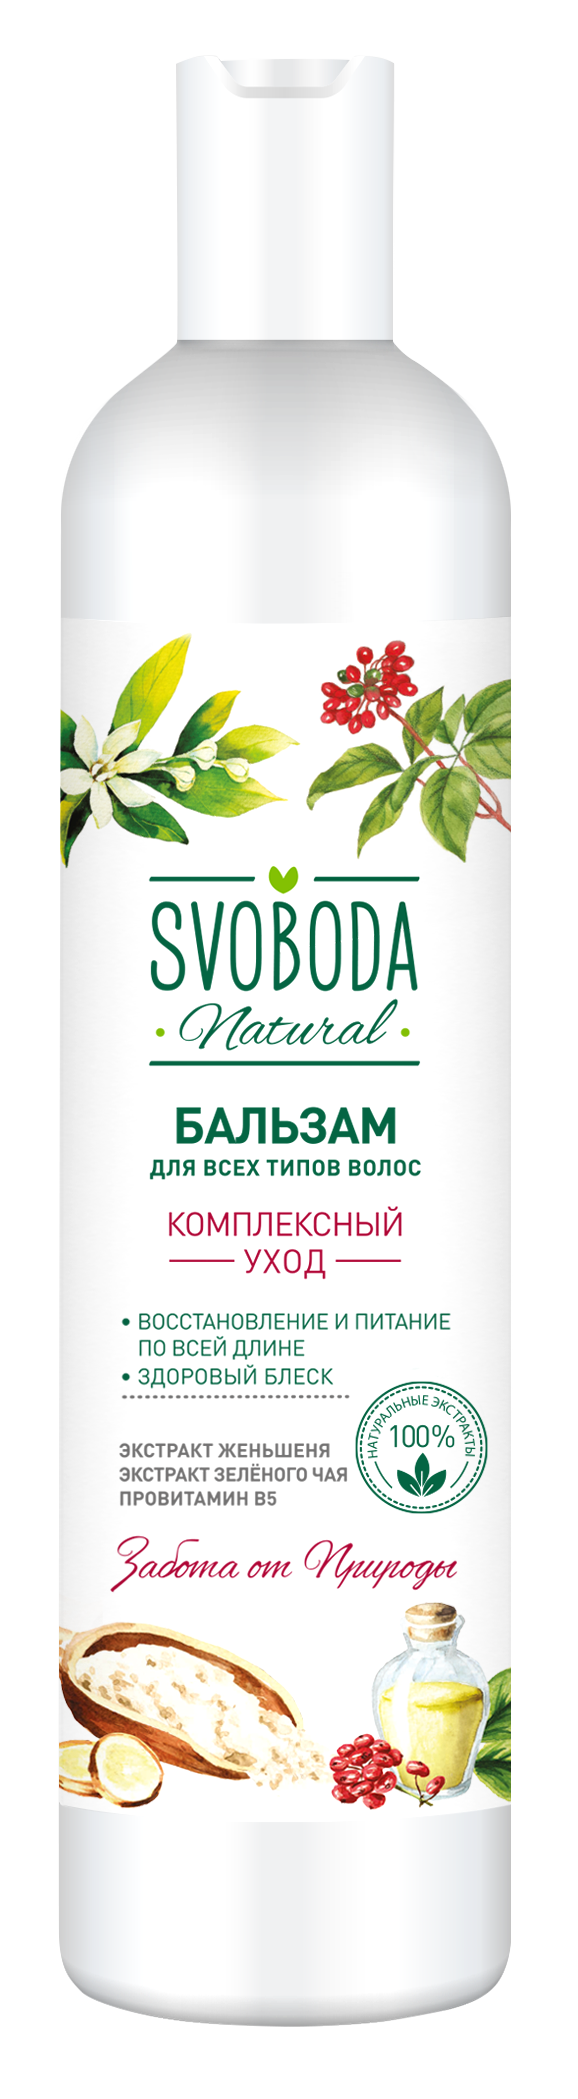 Бальзам-ополаскиватель SVOBODA для всех типов волос экстракт женьшеня,экстракт зеленого чая,провитам